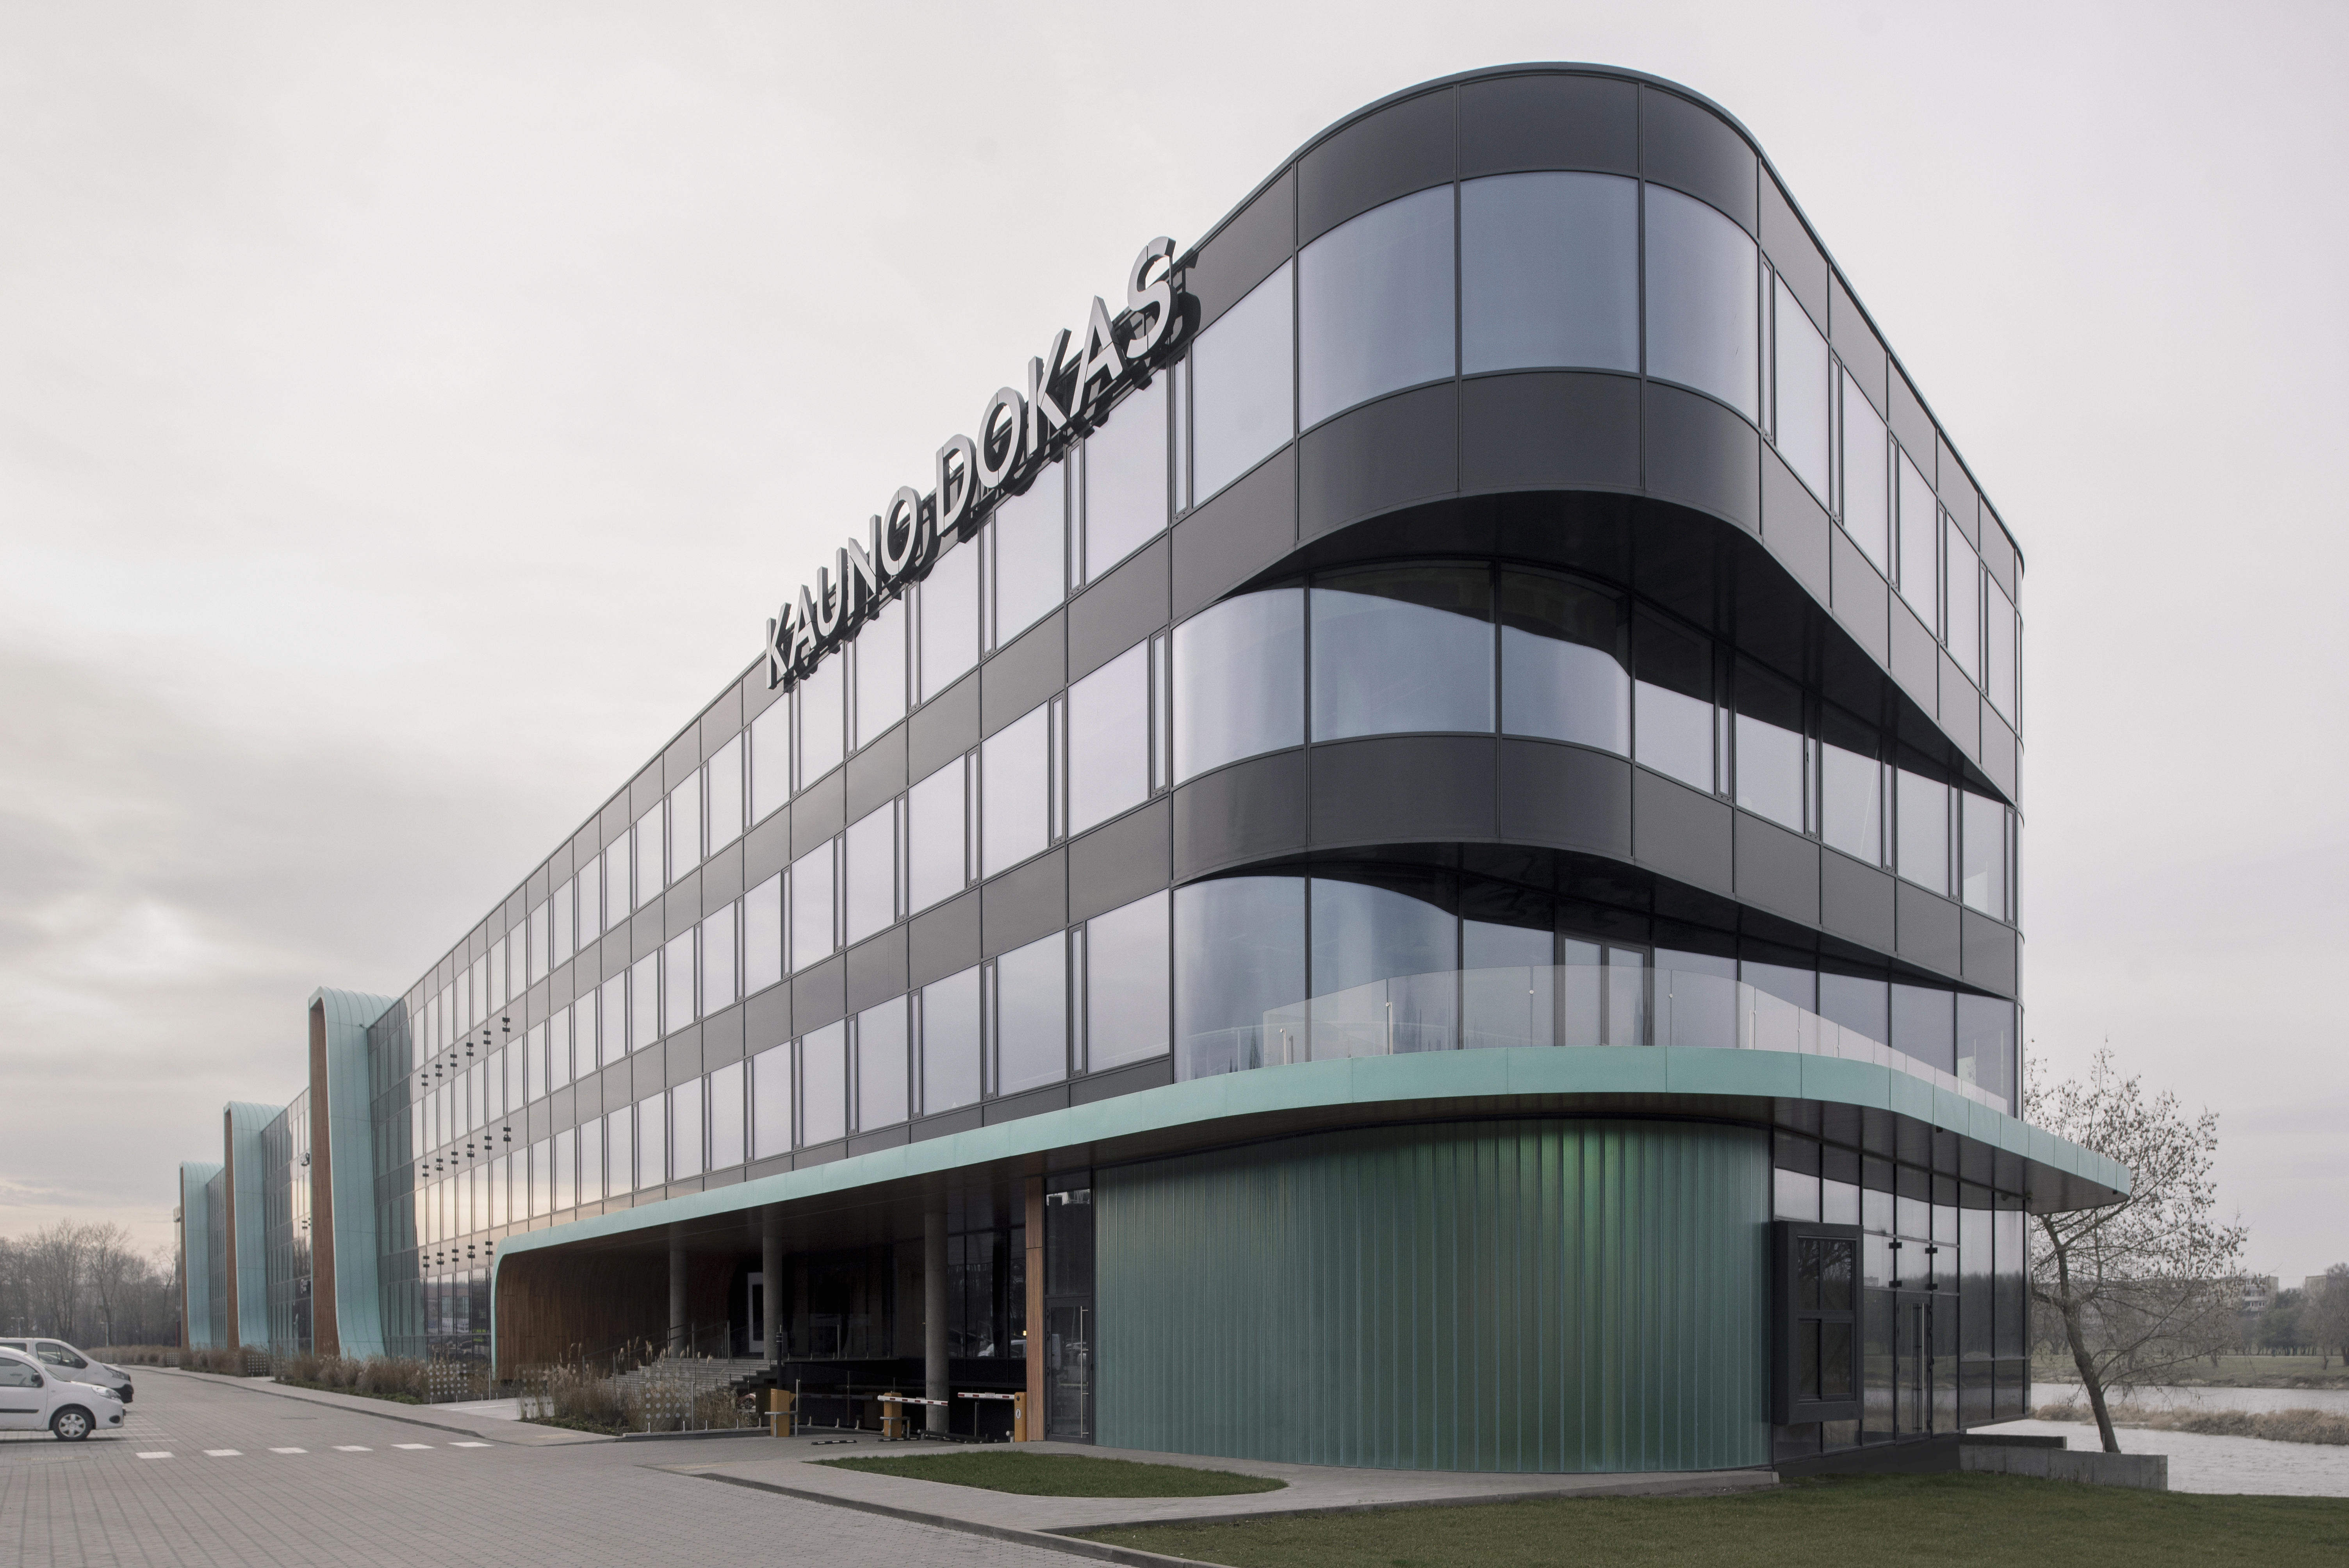 KAUNO DOKAS – Eco-friendly business center using unitized glass facades